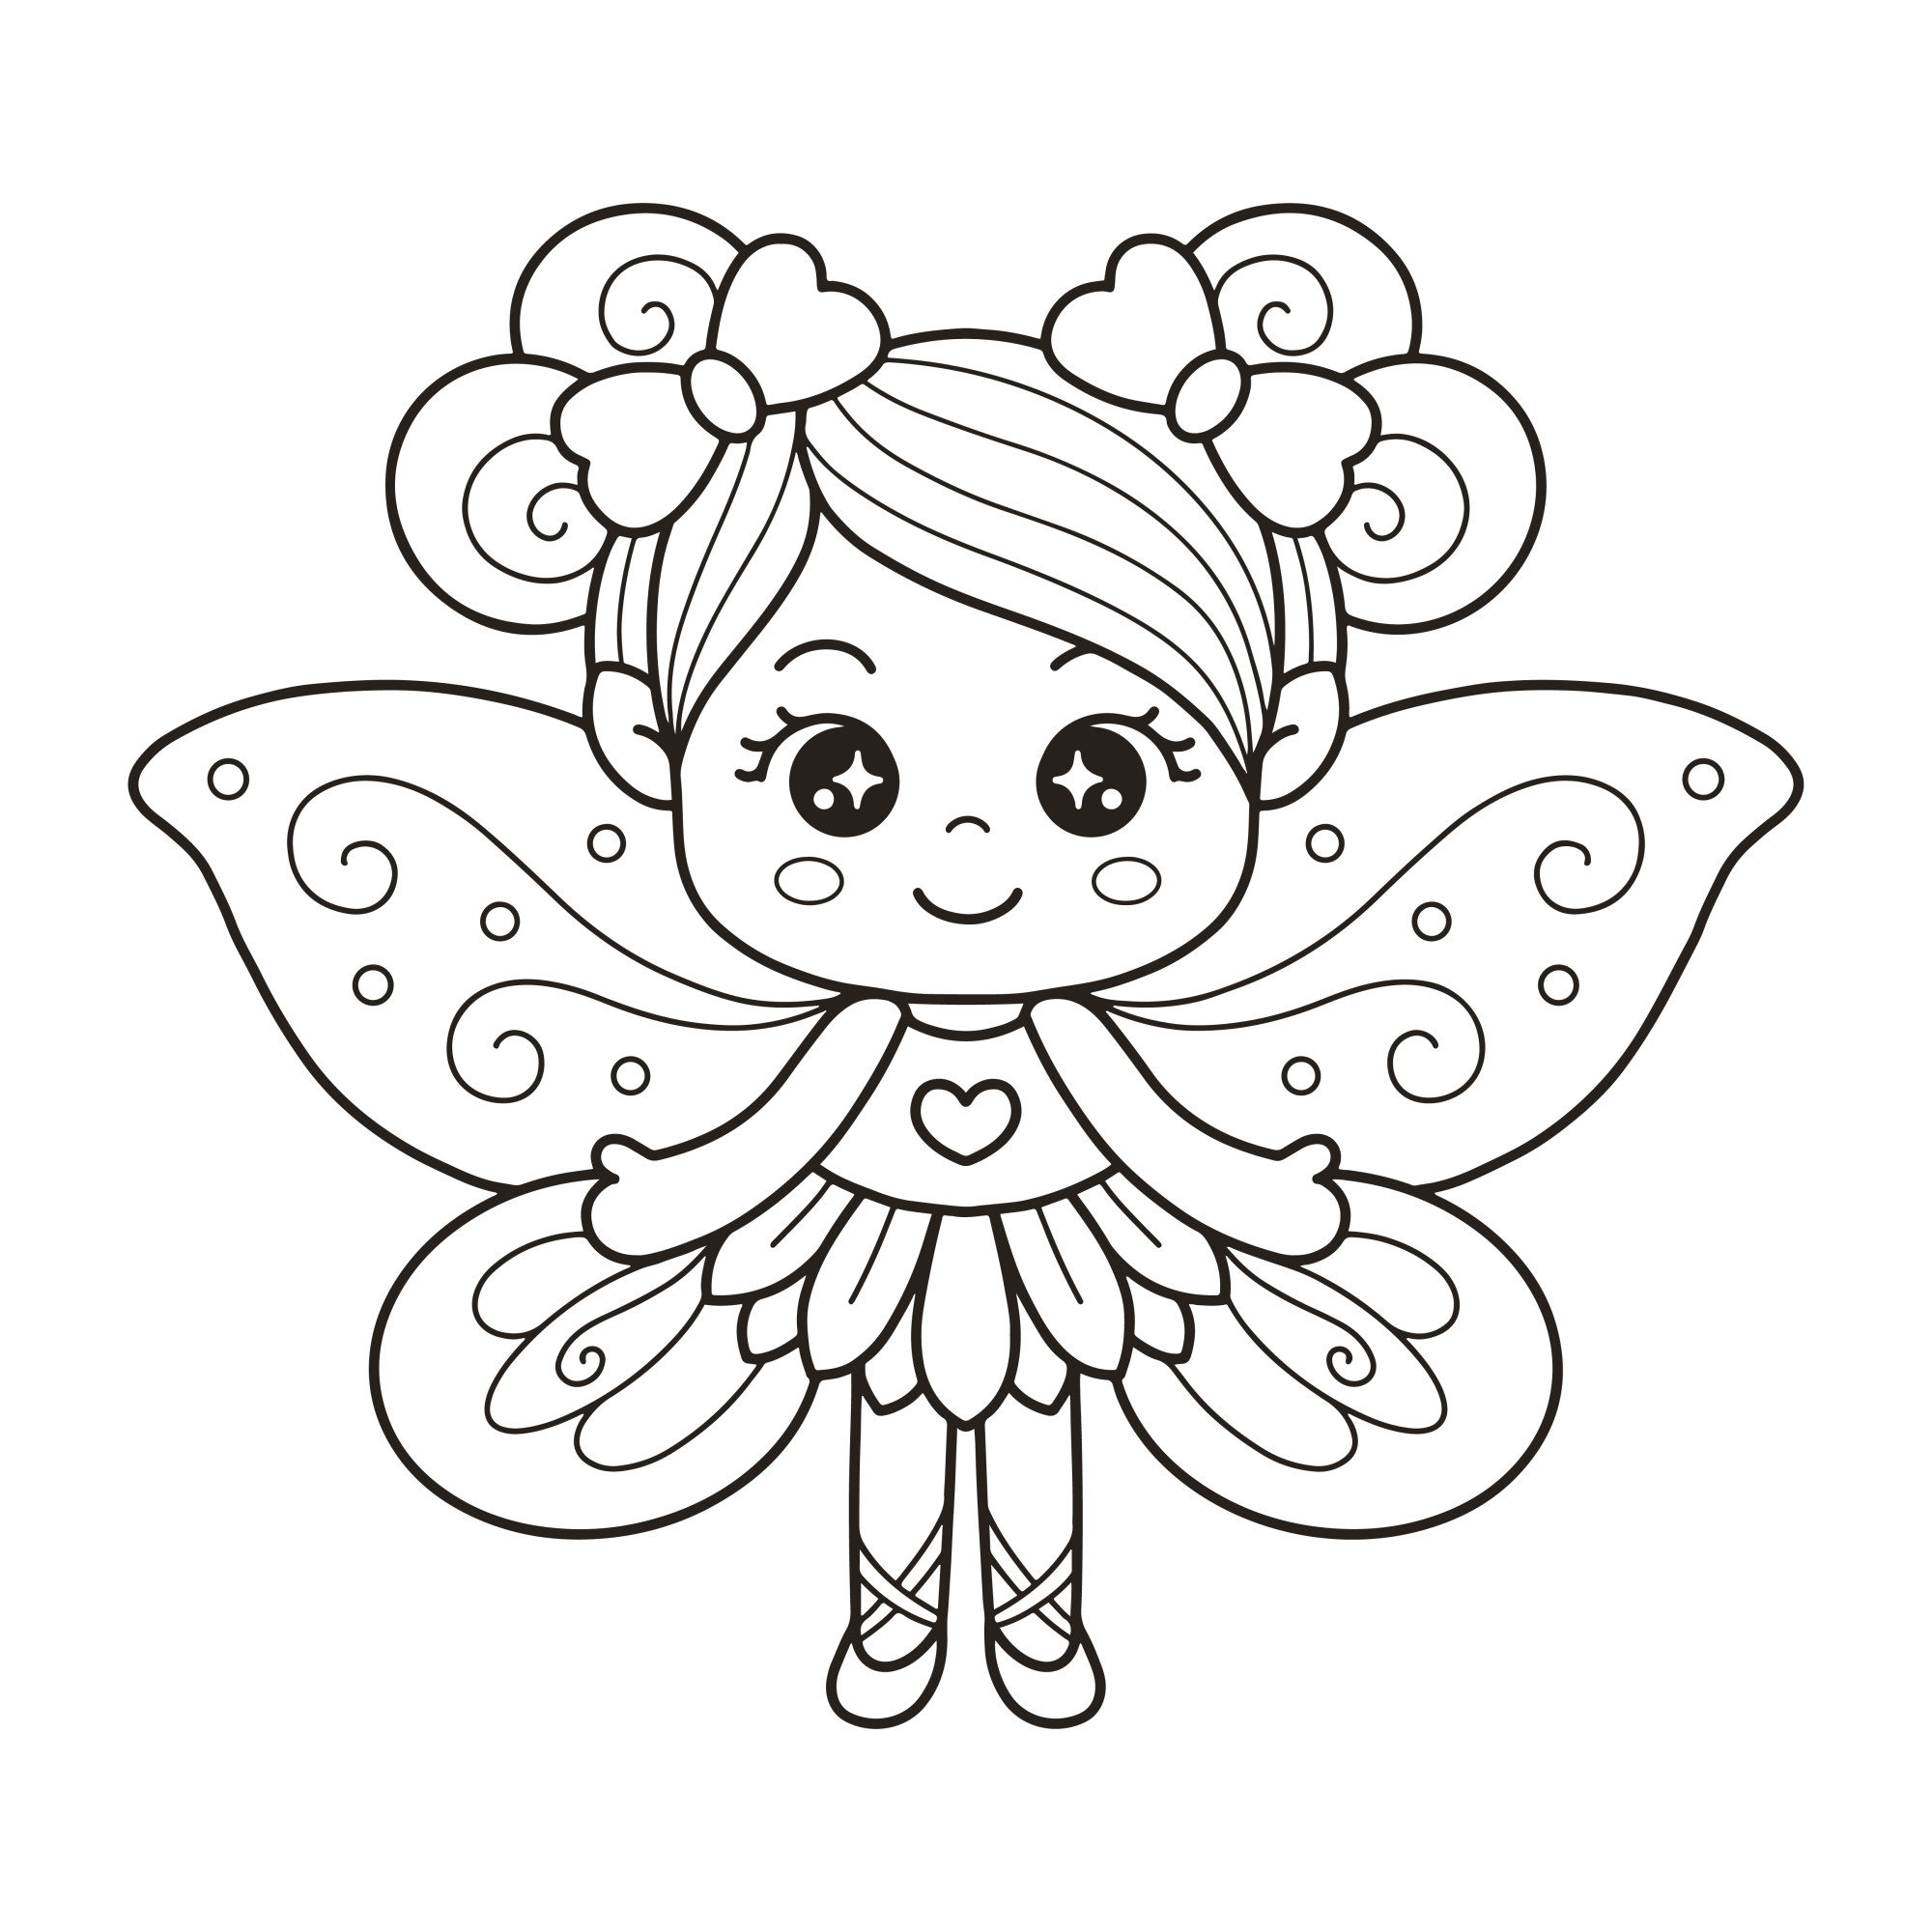 Раскраска для детей: маленькая девочка с крыльями бабочки и бантами